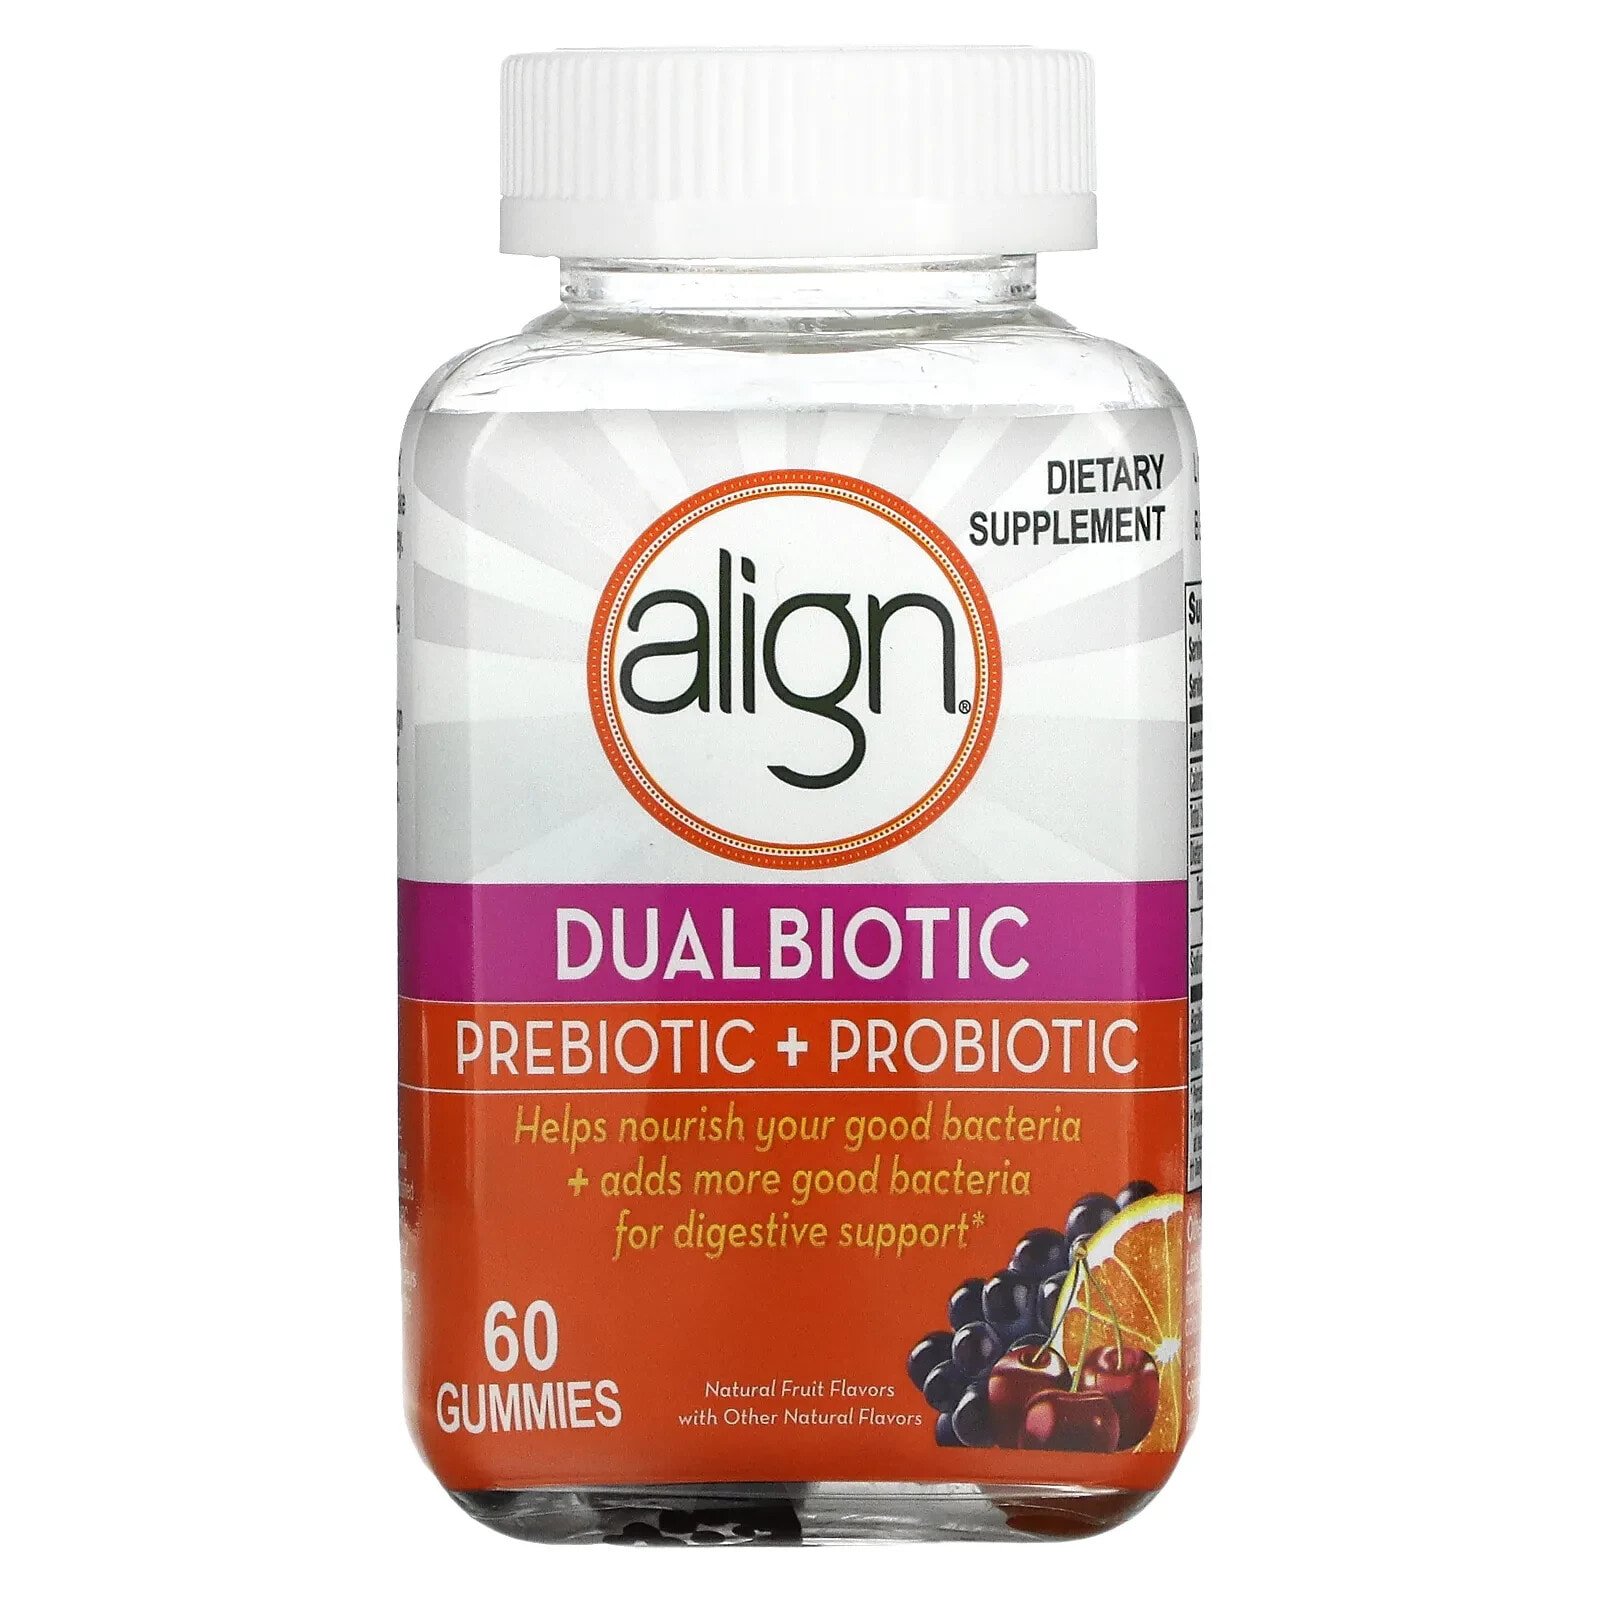 Элигн Пробиотикс, Dualbiotic, пребиотик и пробиотик, натуральные фрукты, 60 жевательных таблеток